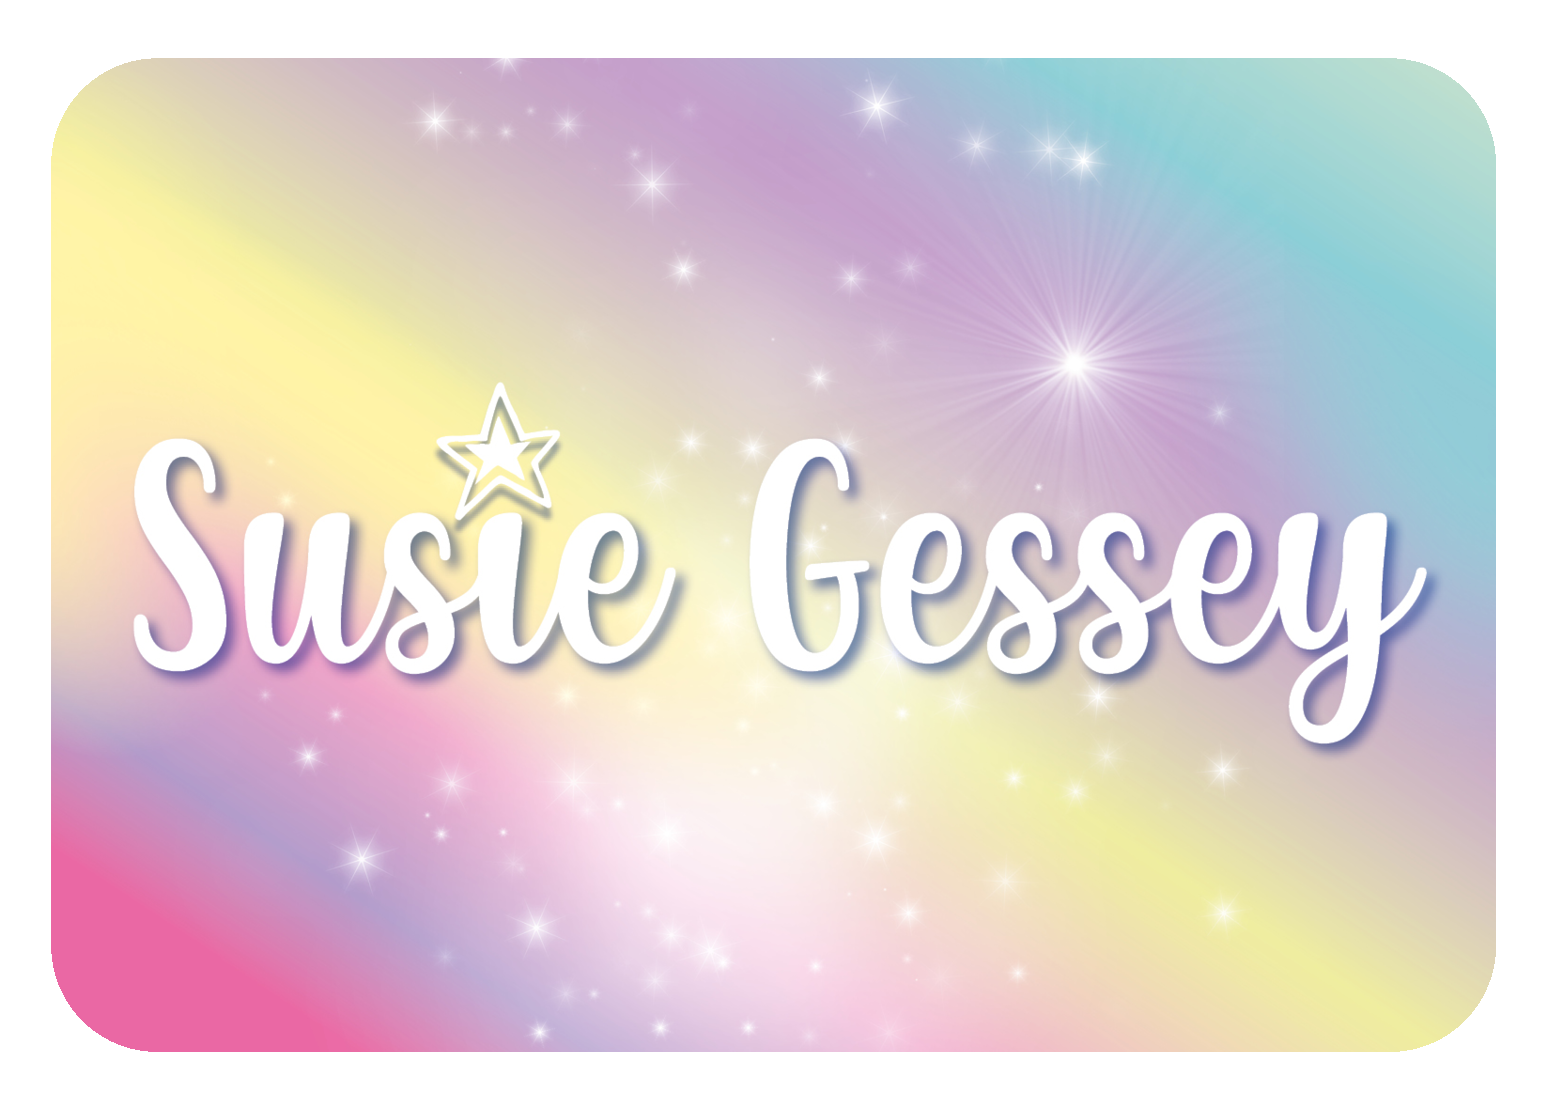 Susie Gessey